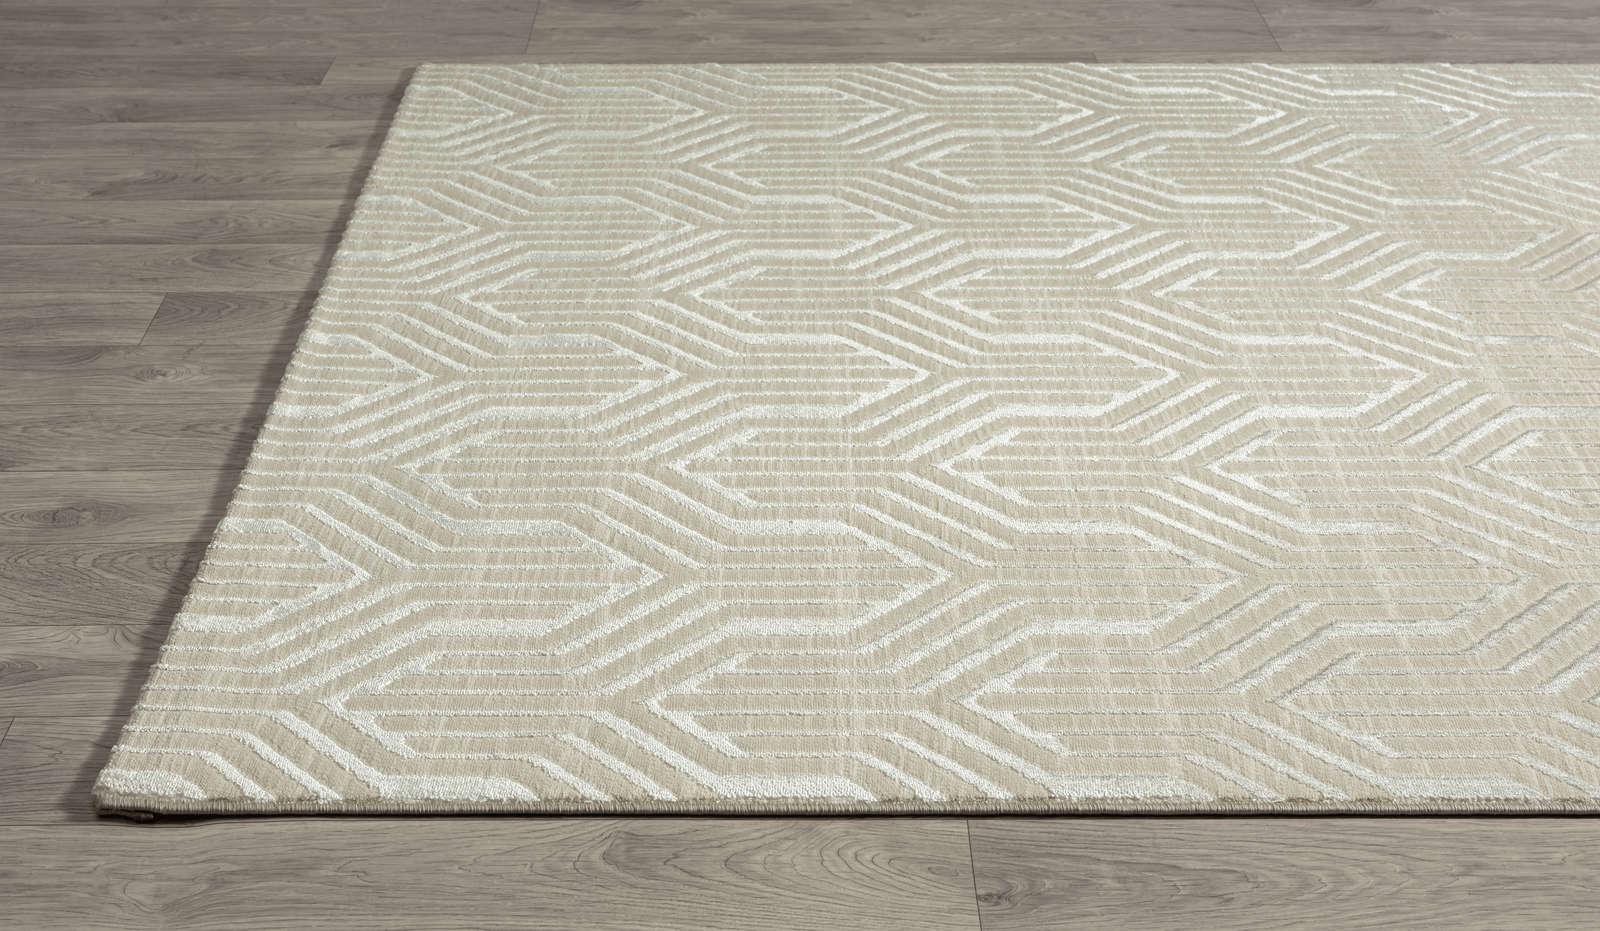             Soft pile carpet in cream - 150 x 80 cm
        